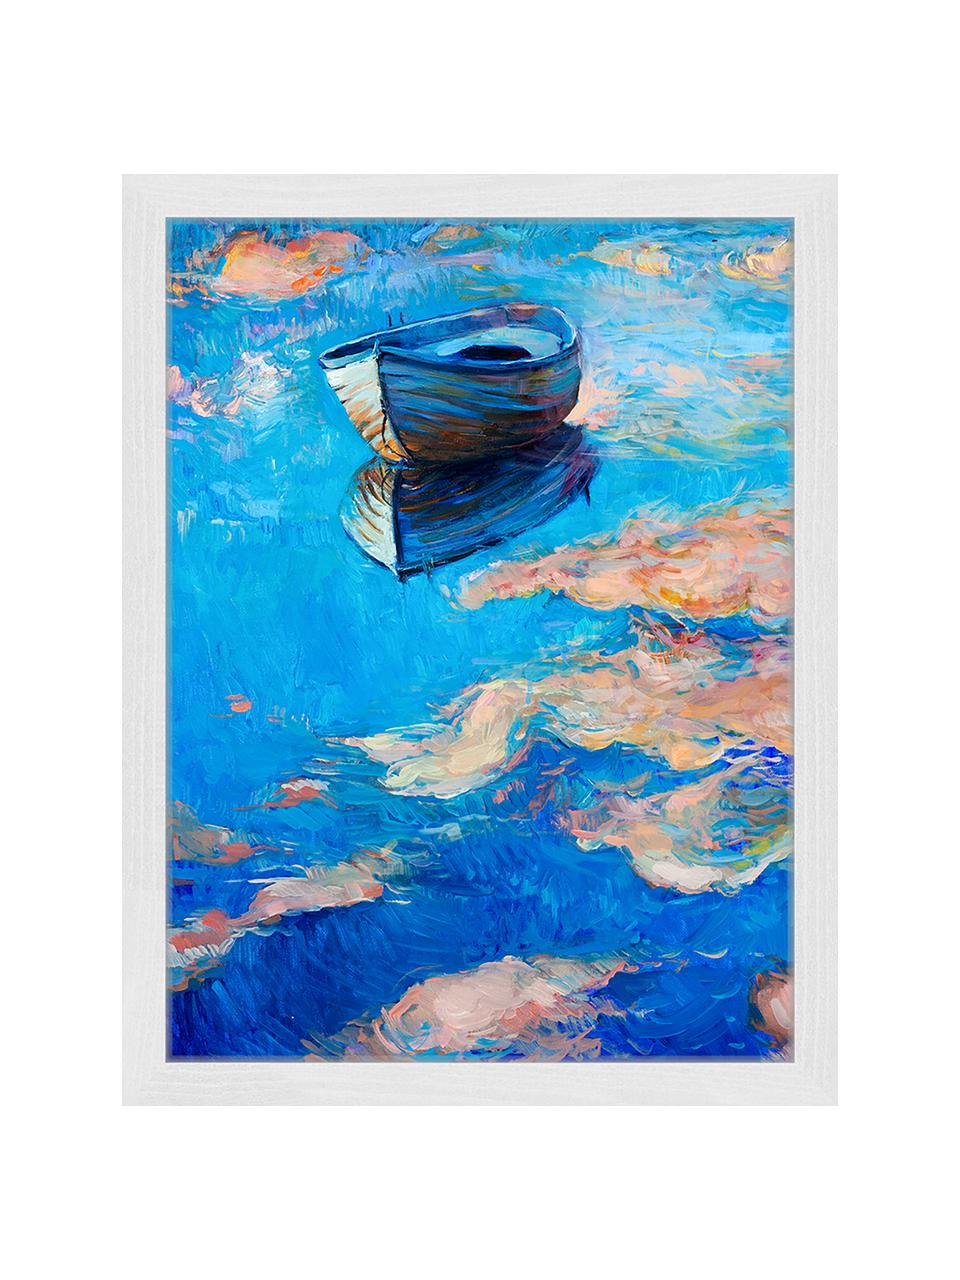 Gerahmter Digitaldruck Boat, Bild: Digitaldruck auf Papier, , Rahmen: Holz, lackiert, Front: Plexiglas, Mehrfarbig, 33 x 43 cm